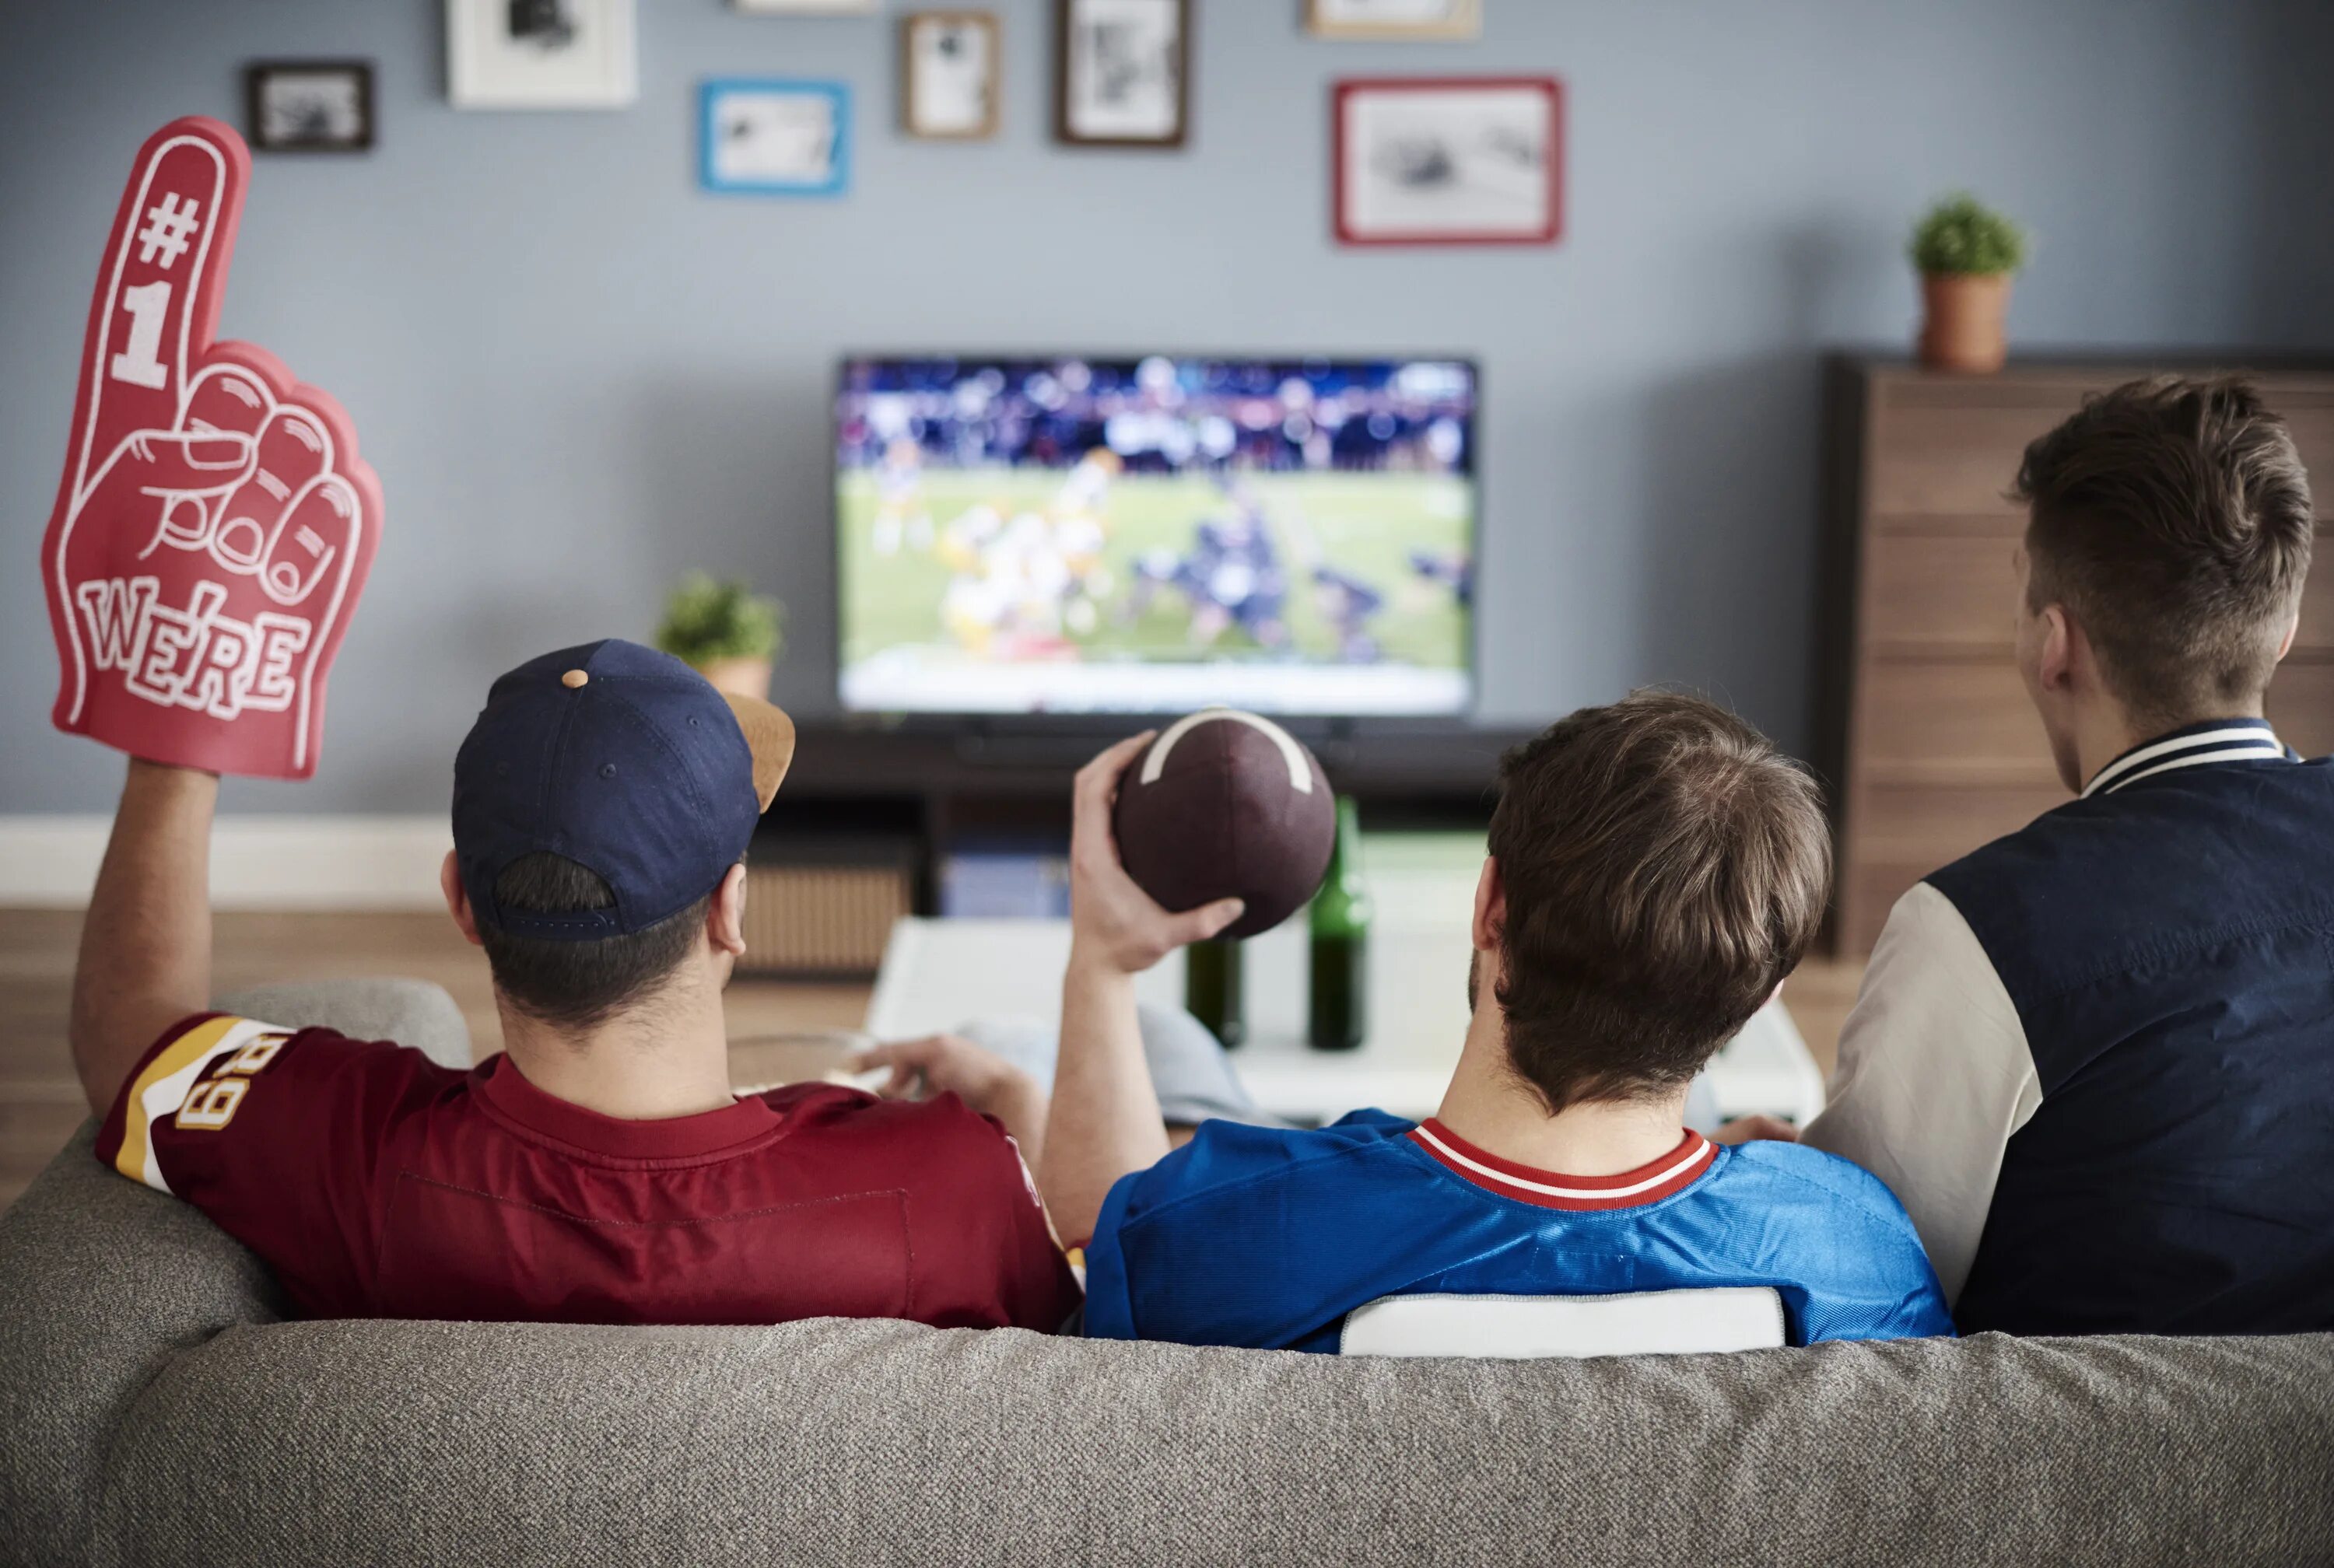 Watch fan. Спорт по телевизору. Банки перед телевизором. Пикник перед телевизором. Люди смотрят матч по телевизору.